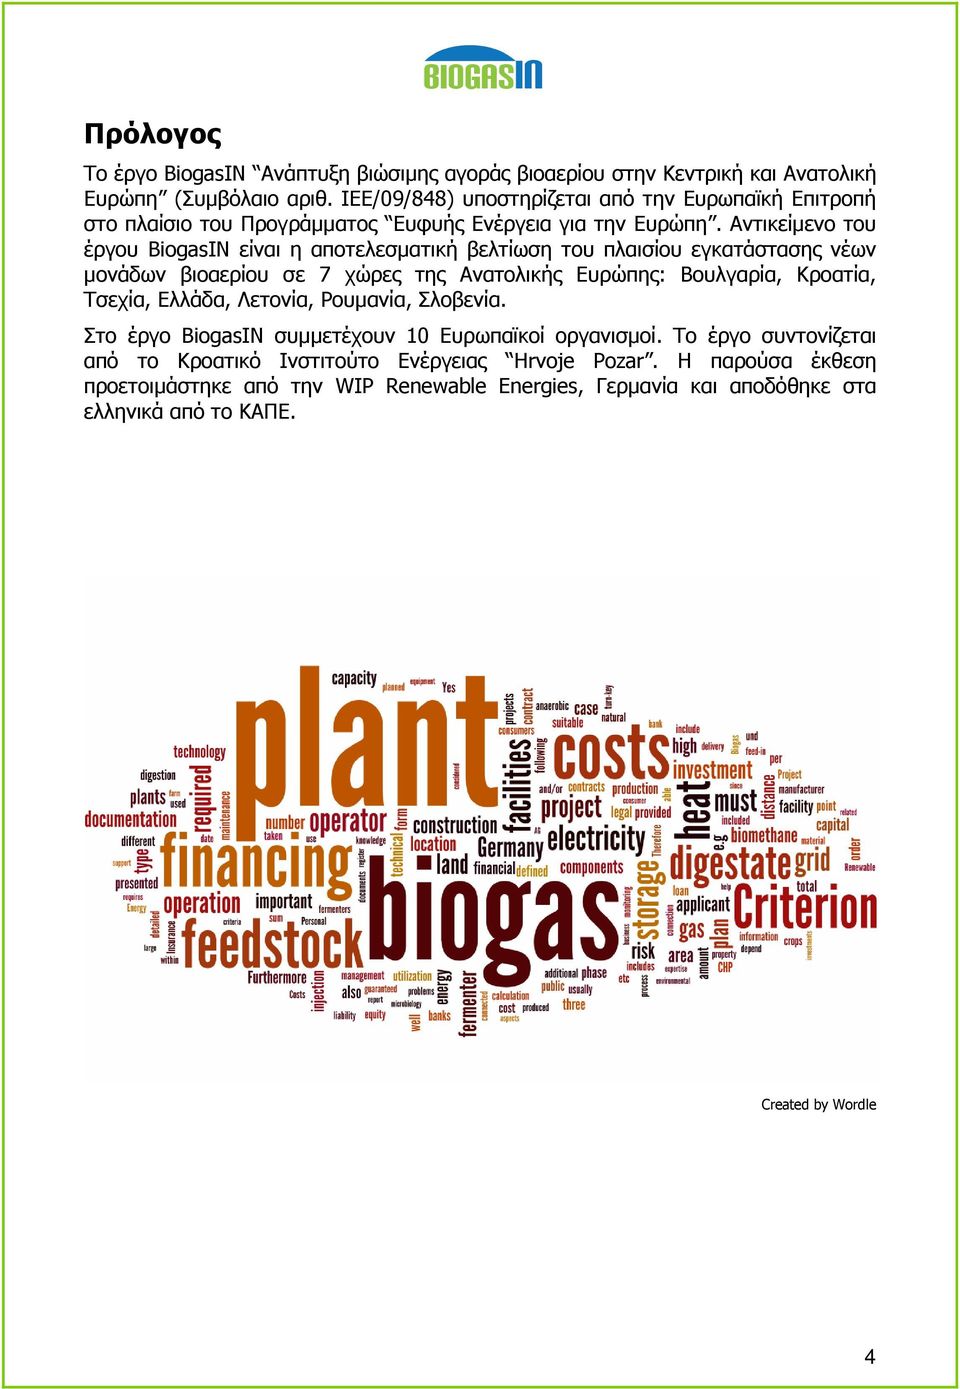 Αντικείµενο του έργου BiogasIN είναι η αποτελεσµατική βελτίωση του πλαισίου εγκατάστασης νέων µονάδων βιοαερίου σε 7 χώρες της Ανατολικής Ευρώπης: Βουλγαρία, Κροατία, Τσεχία,